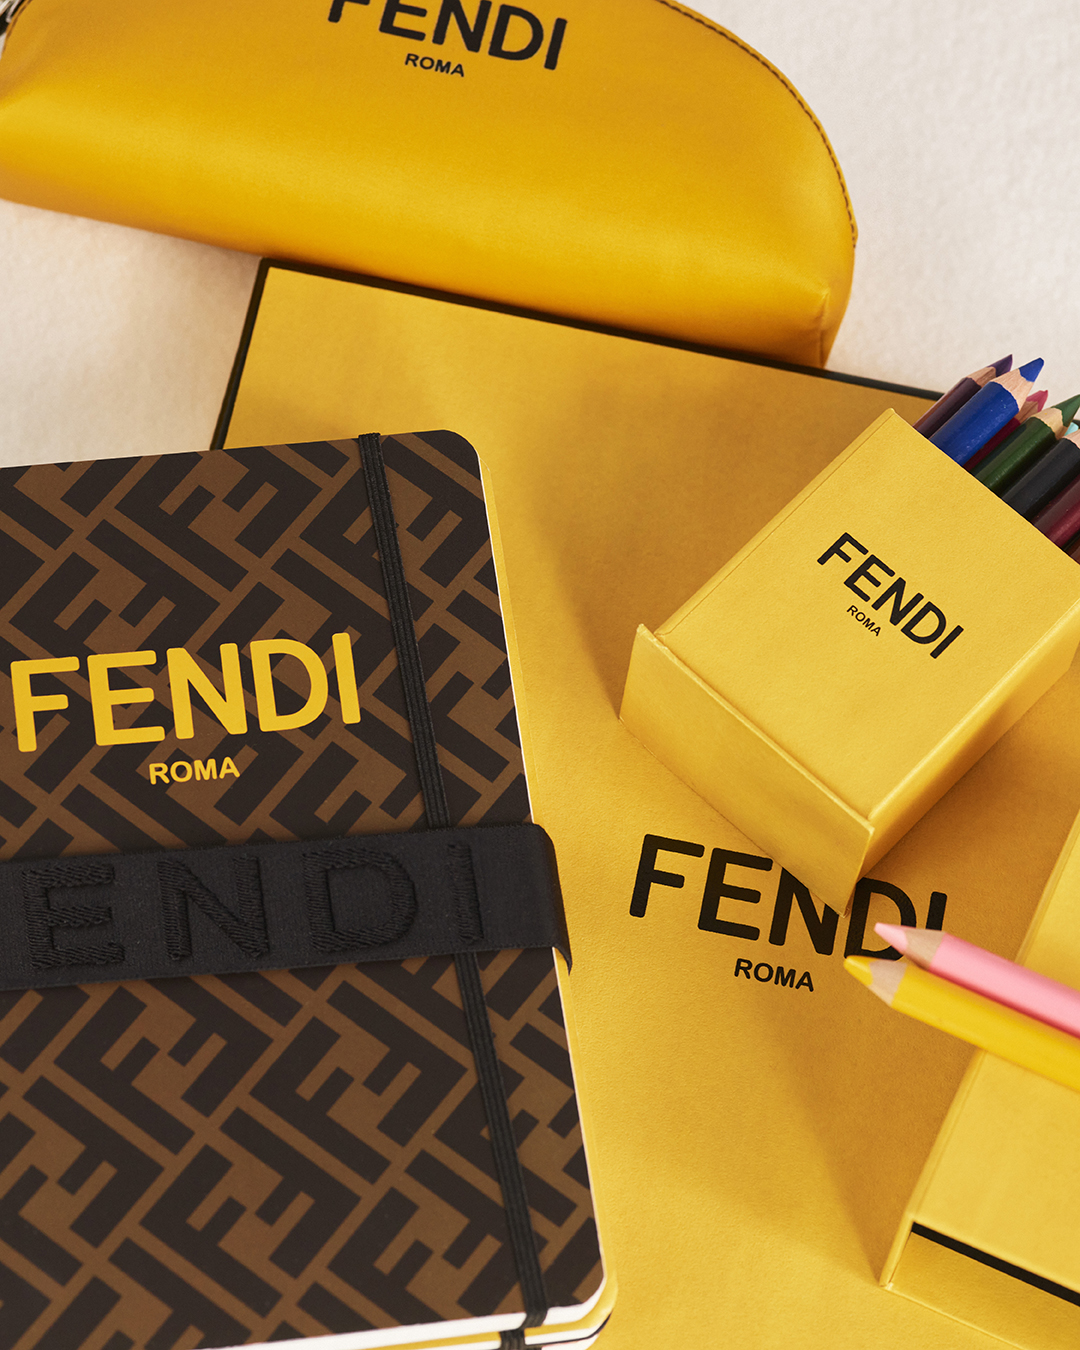 Fendi presenta su colección ‘Back To School’ por Fabriano